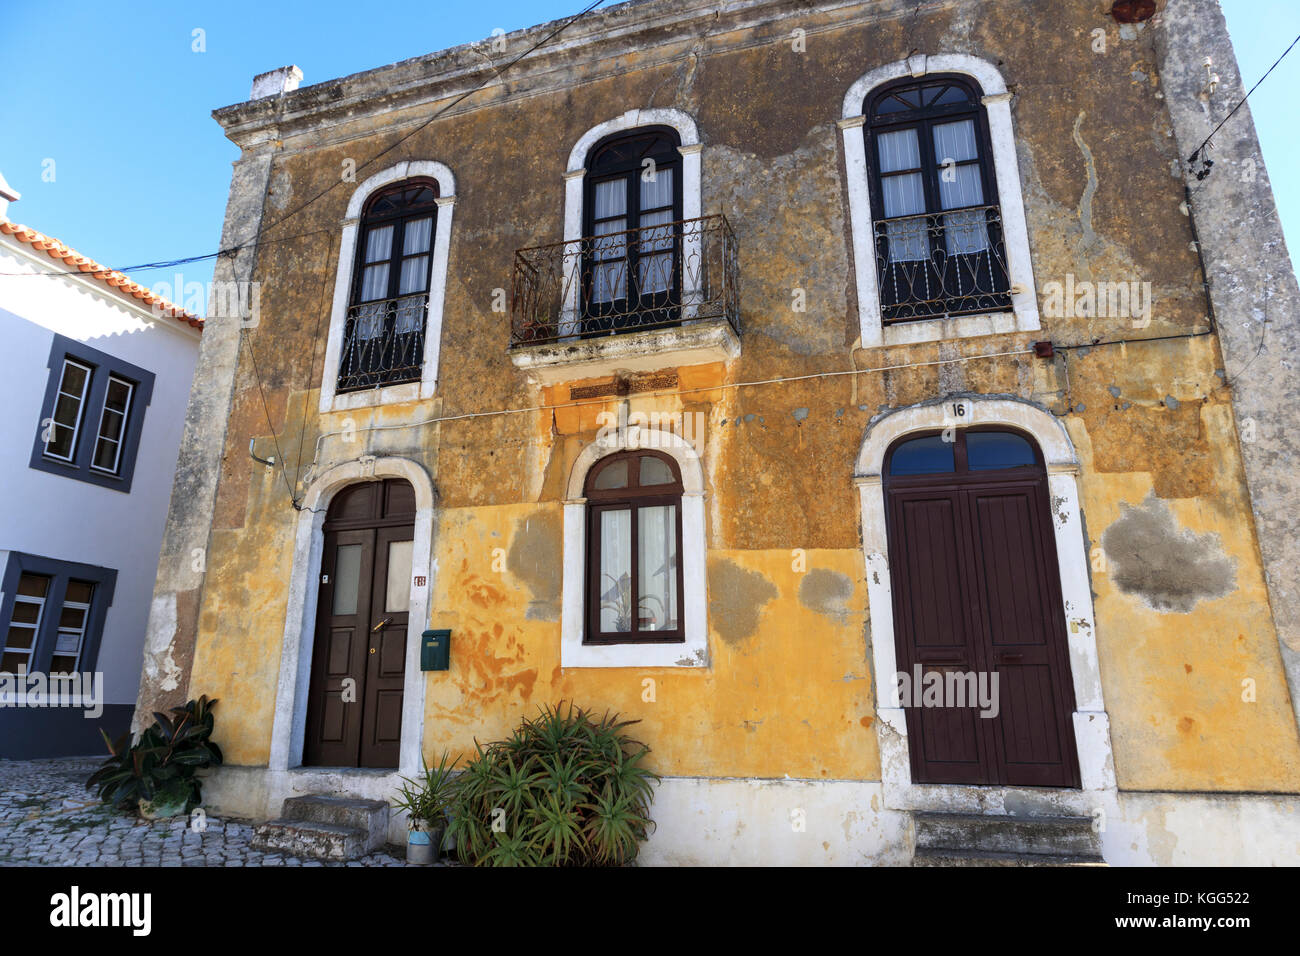 Traversé la façade de l'immeuble dans la ville de Vermelha, Portugal Banque D'Images